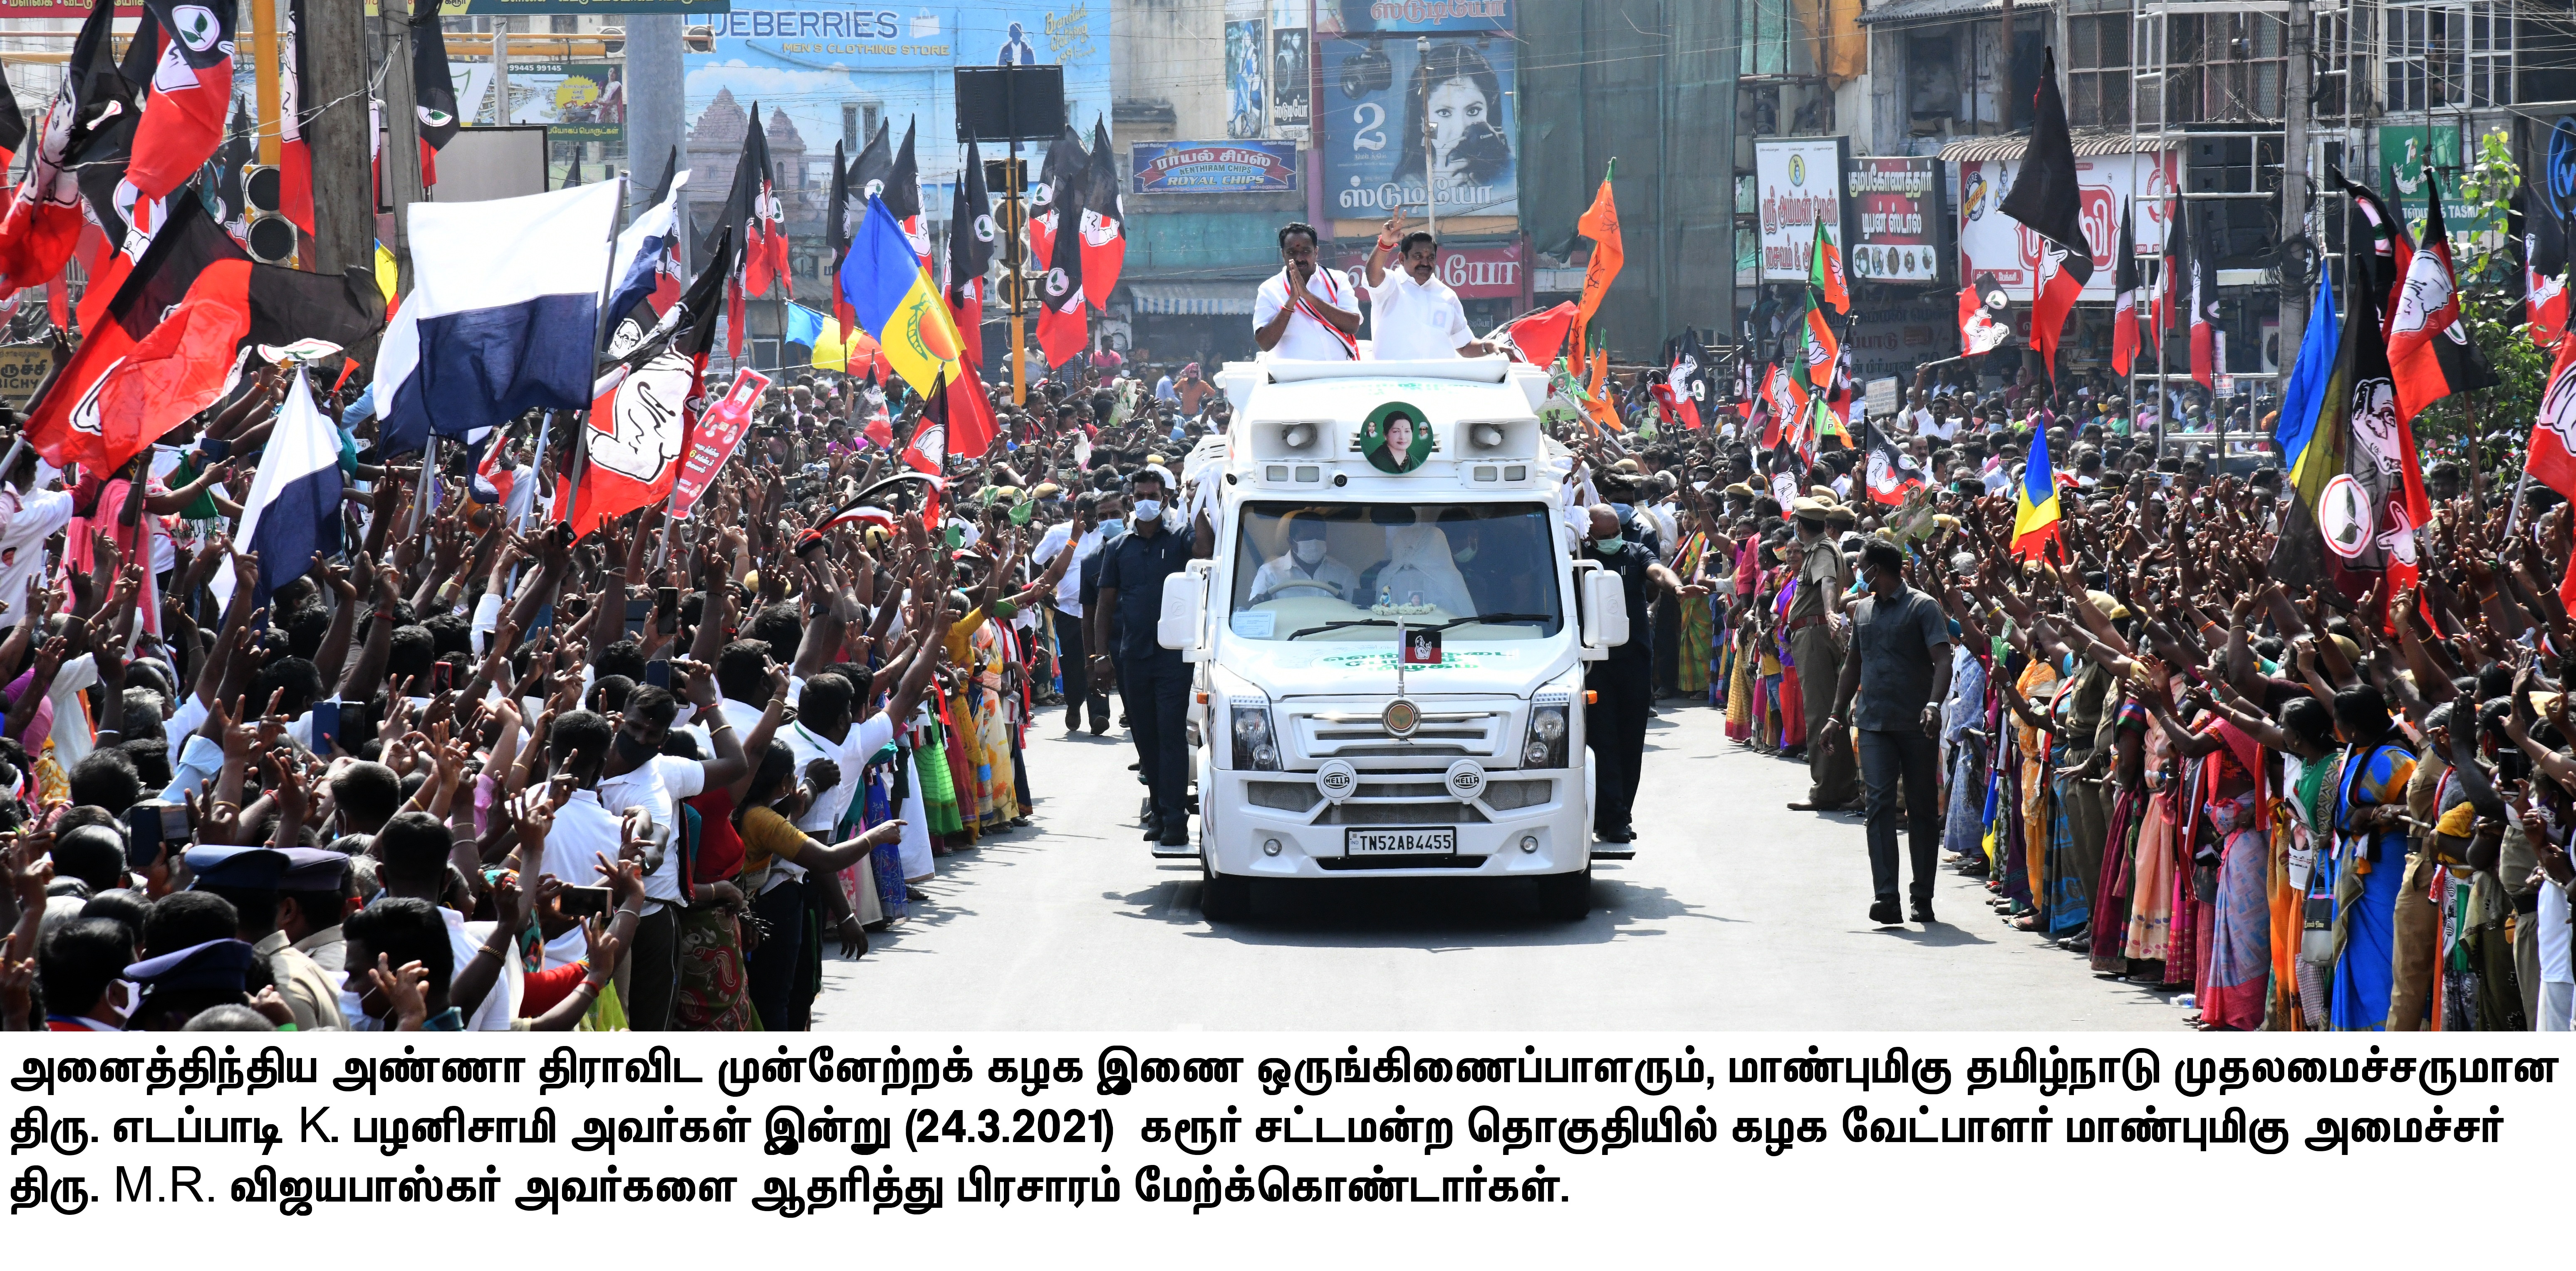 Tamil Nadu Assembly Elections 2021: मोदी के समर्थन से सरकार हुई मजबूत: मुख्यमंत्री